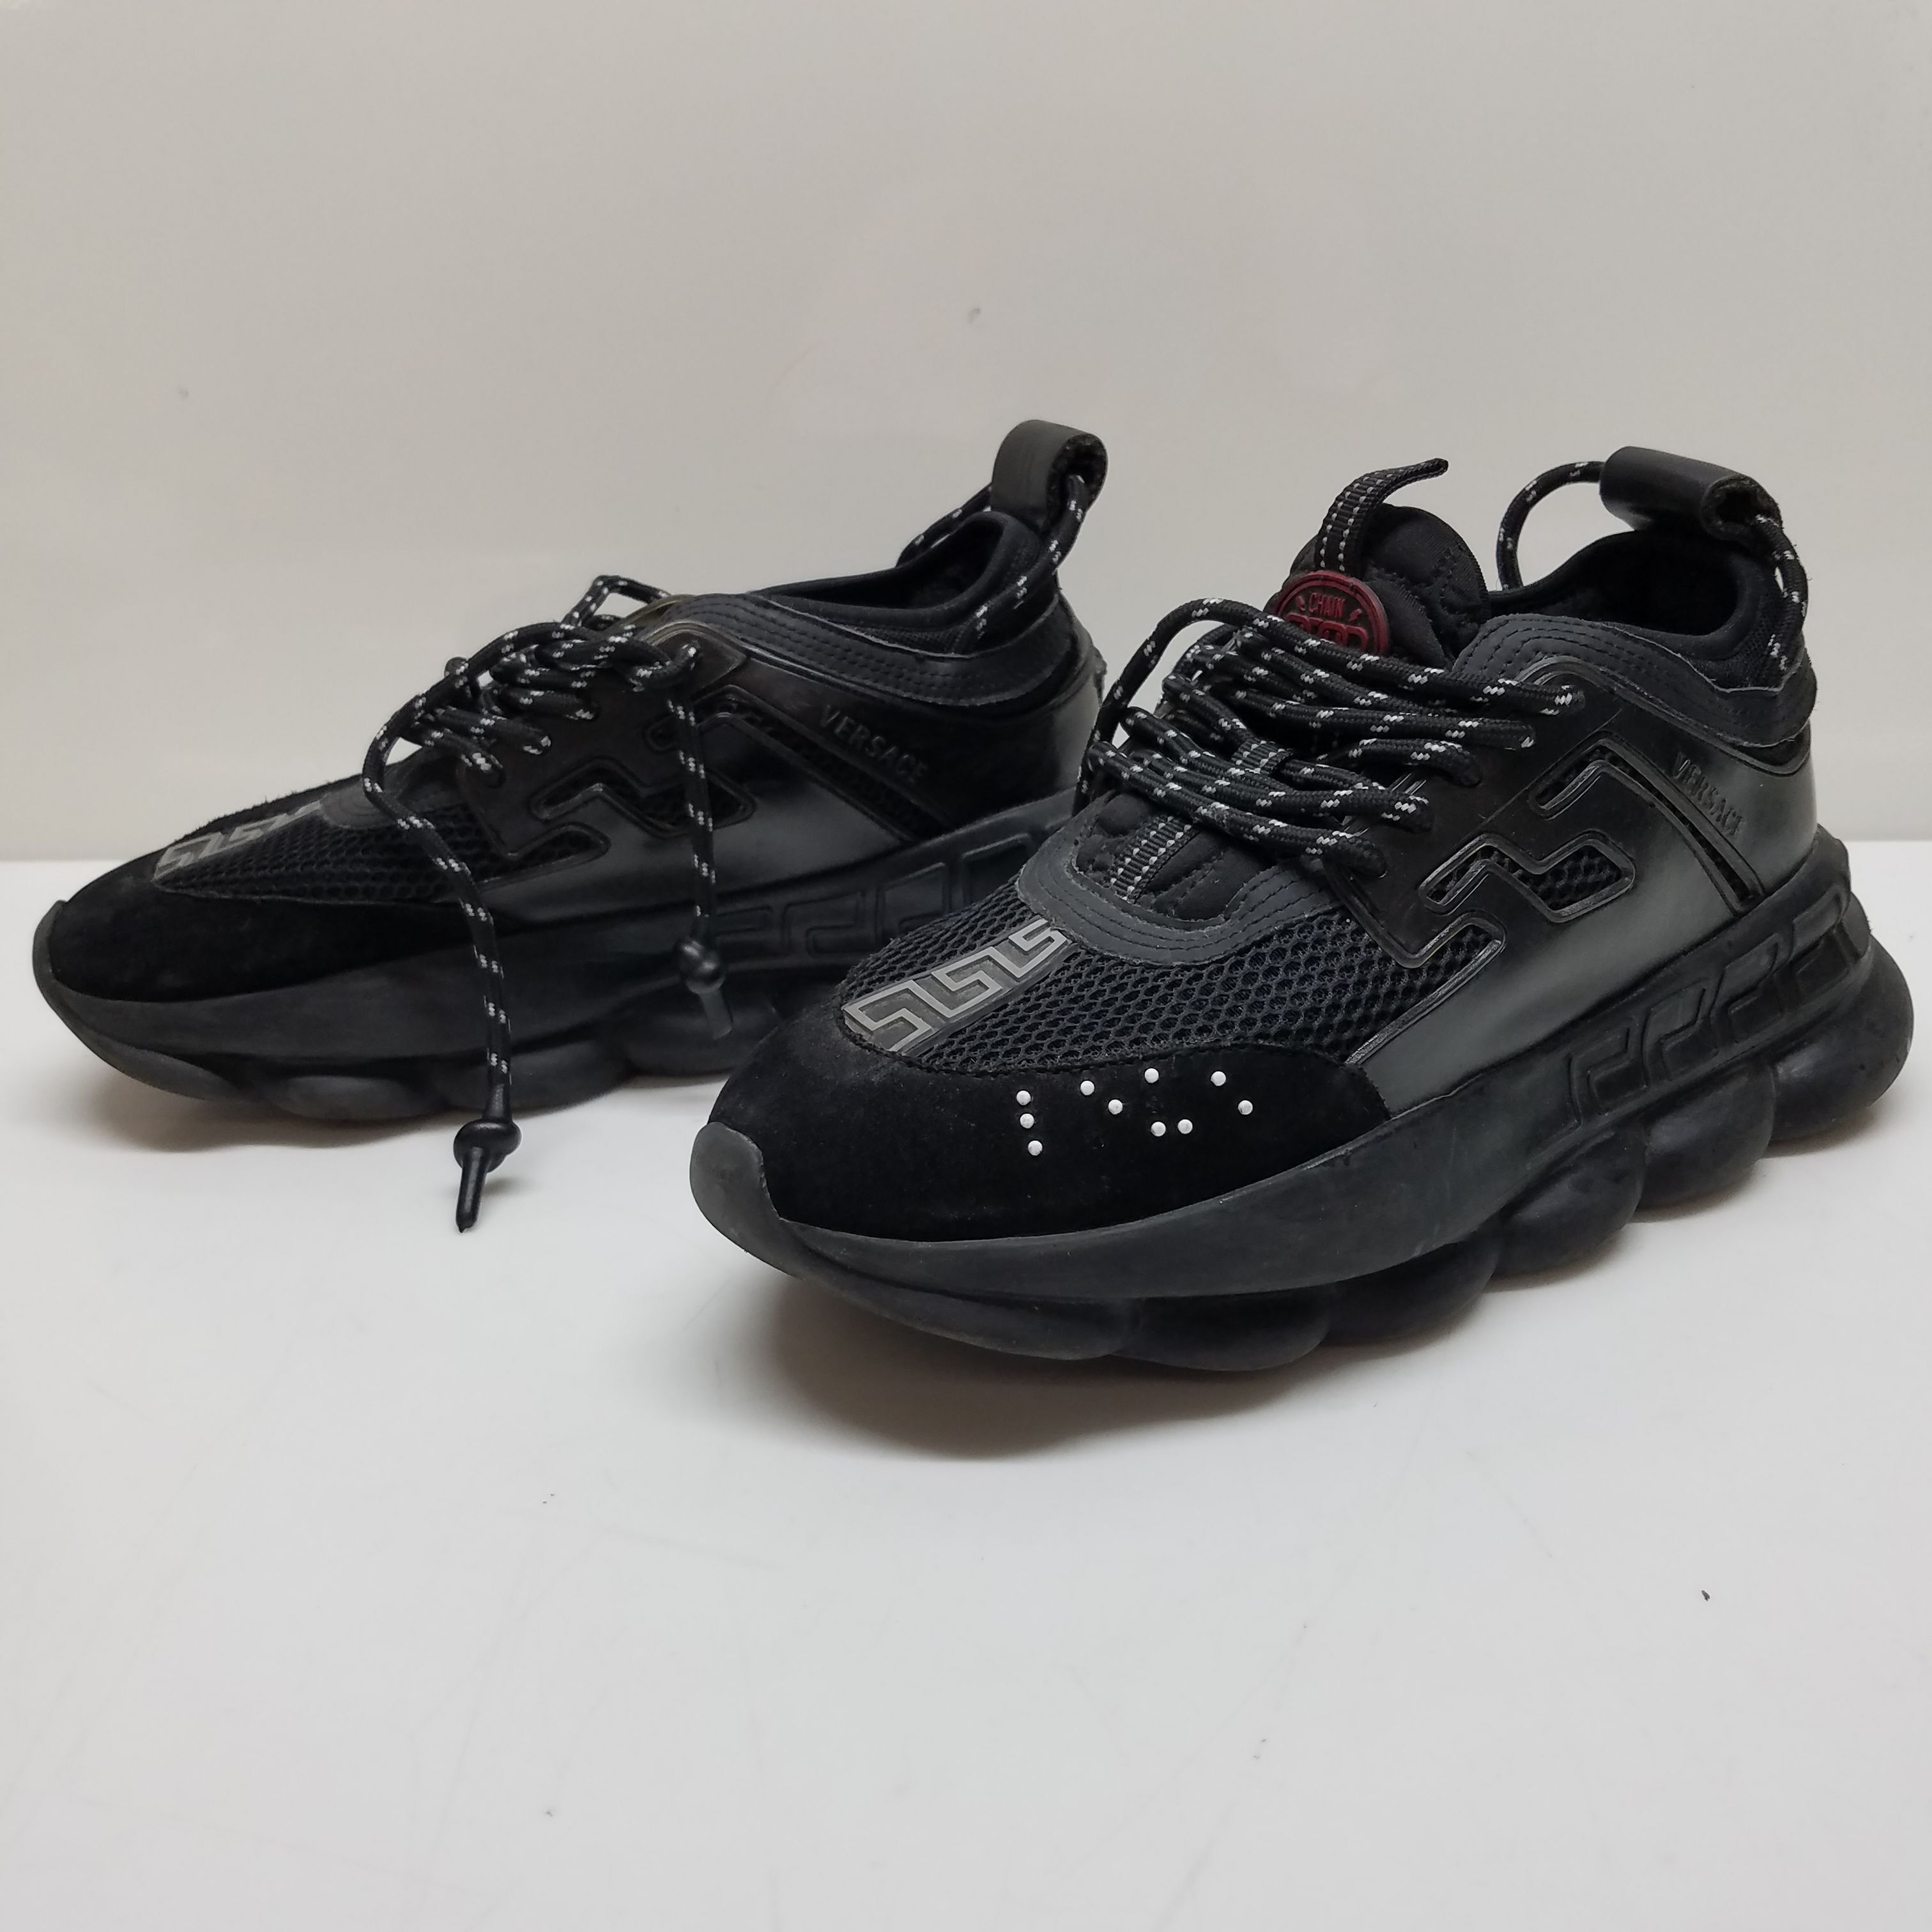 Versace Chain Reaction Black Sneakers Size UK8 Unworn | eBay